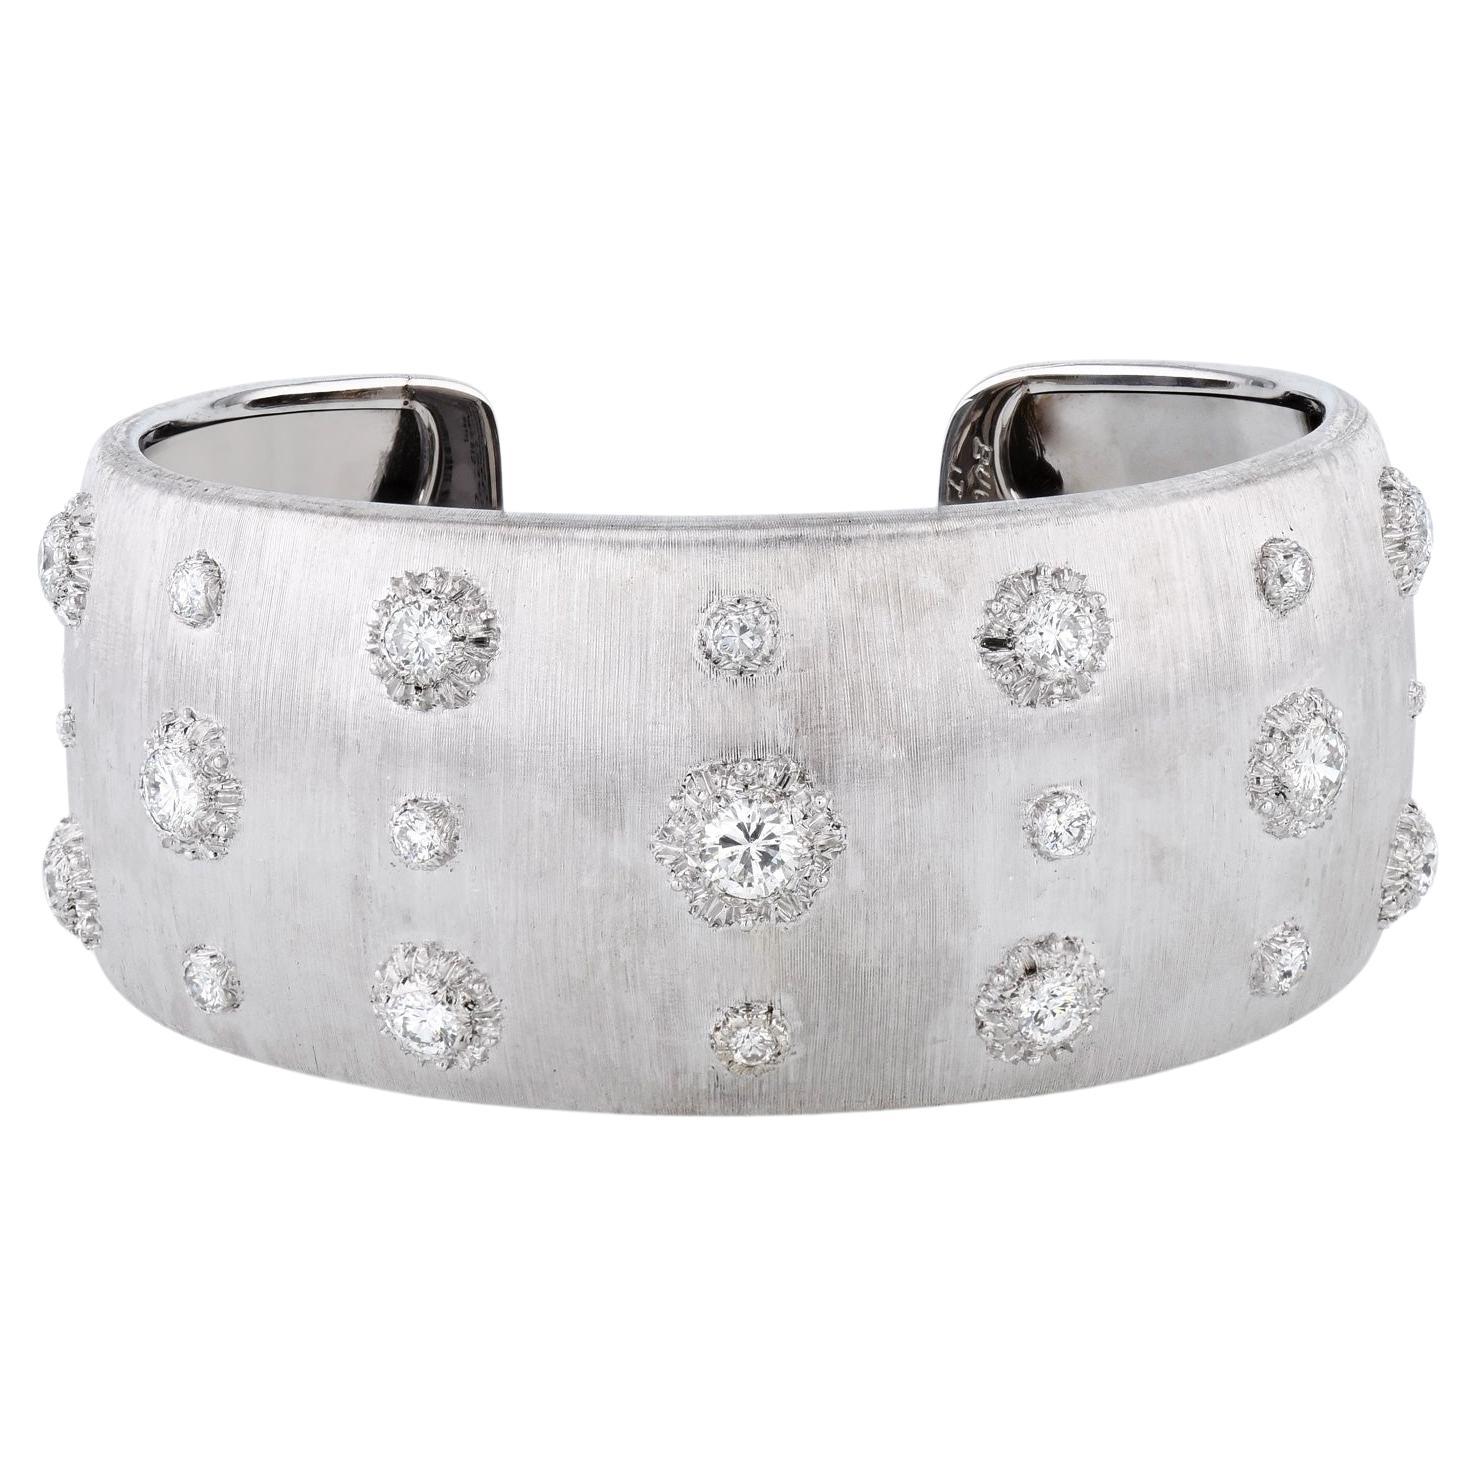 White Gold Buccellati Diamond Estate Cuff Bracelet For Sale